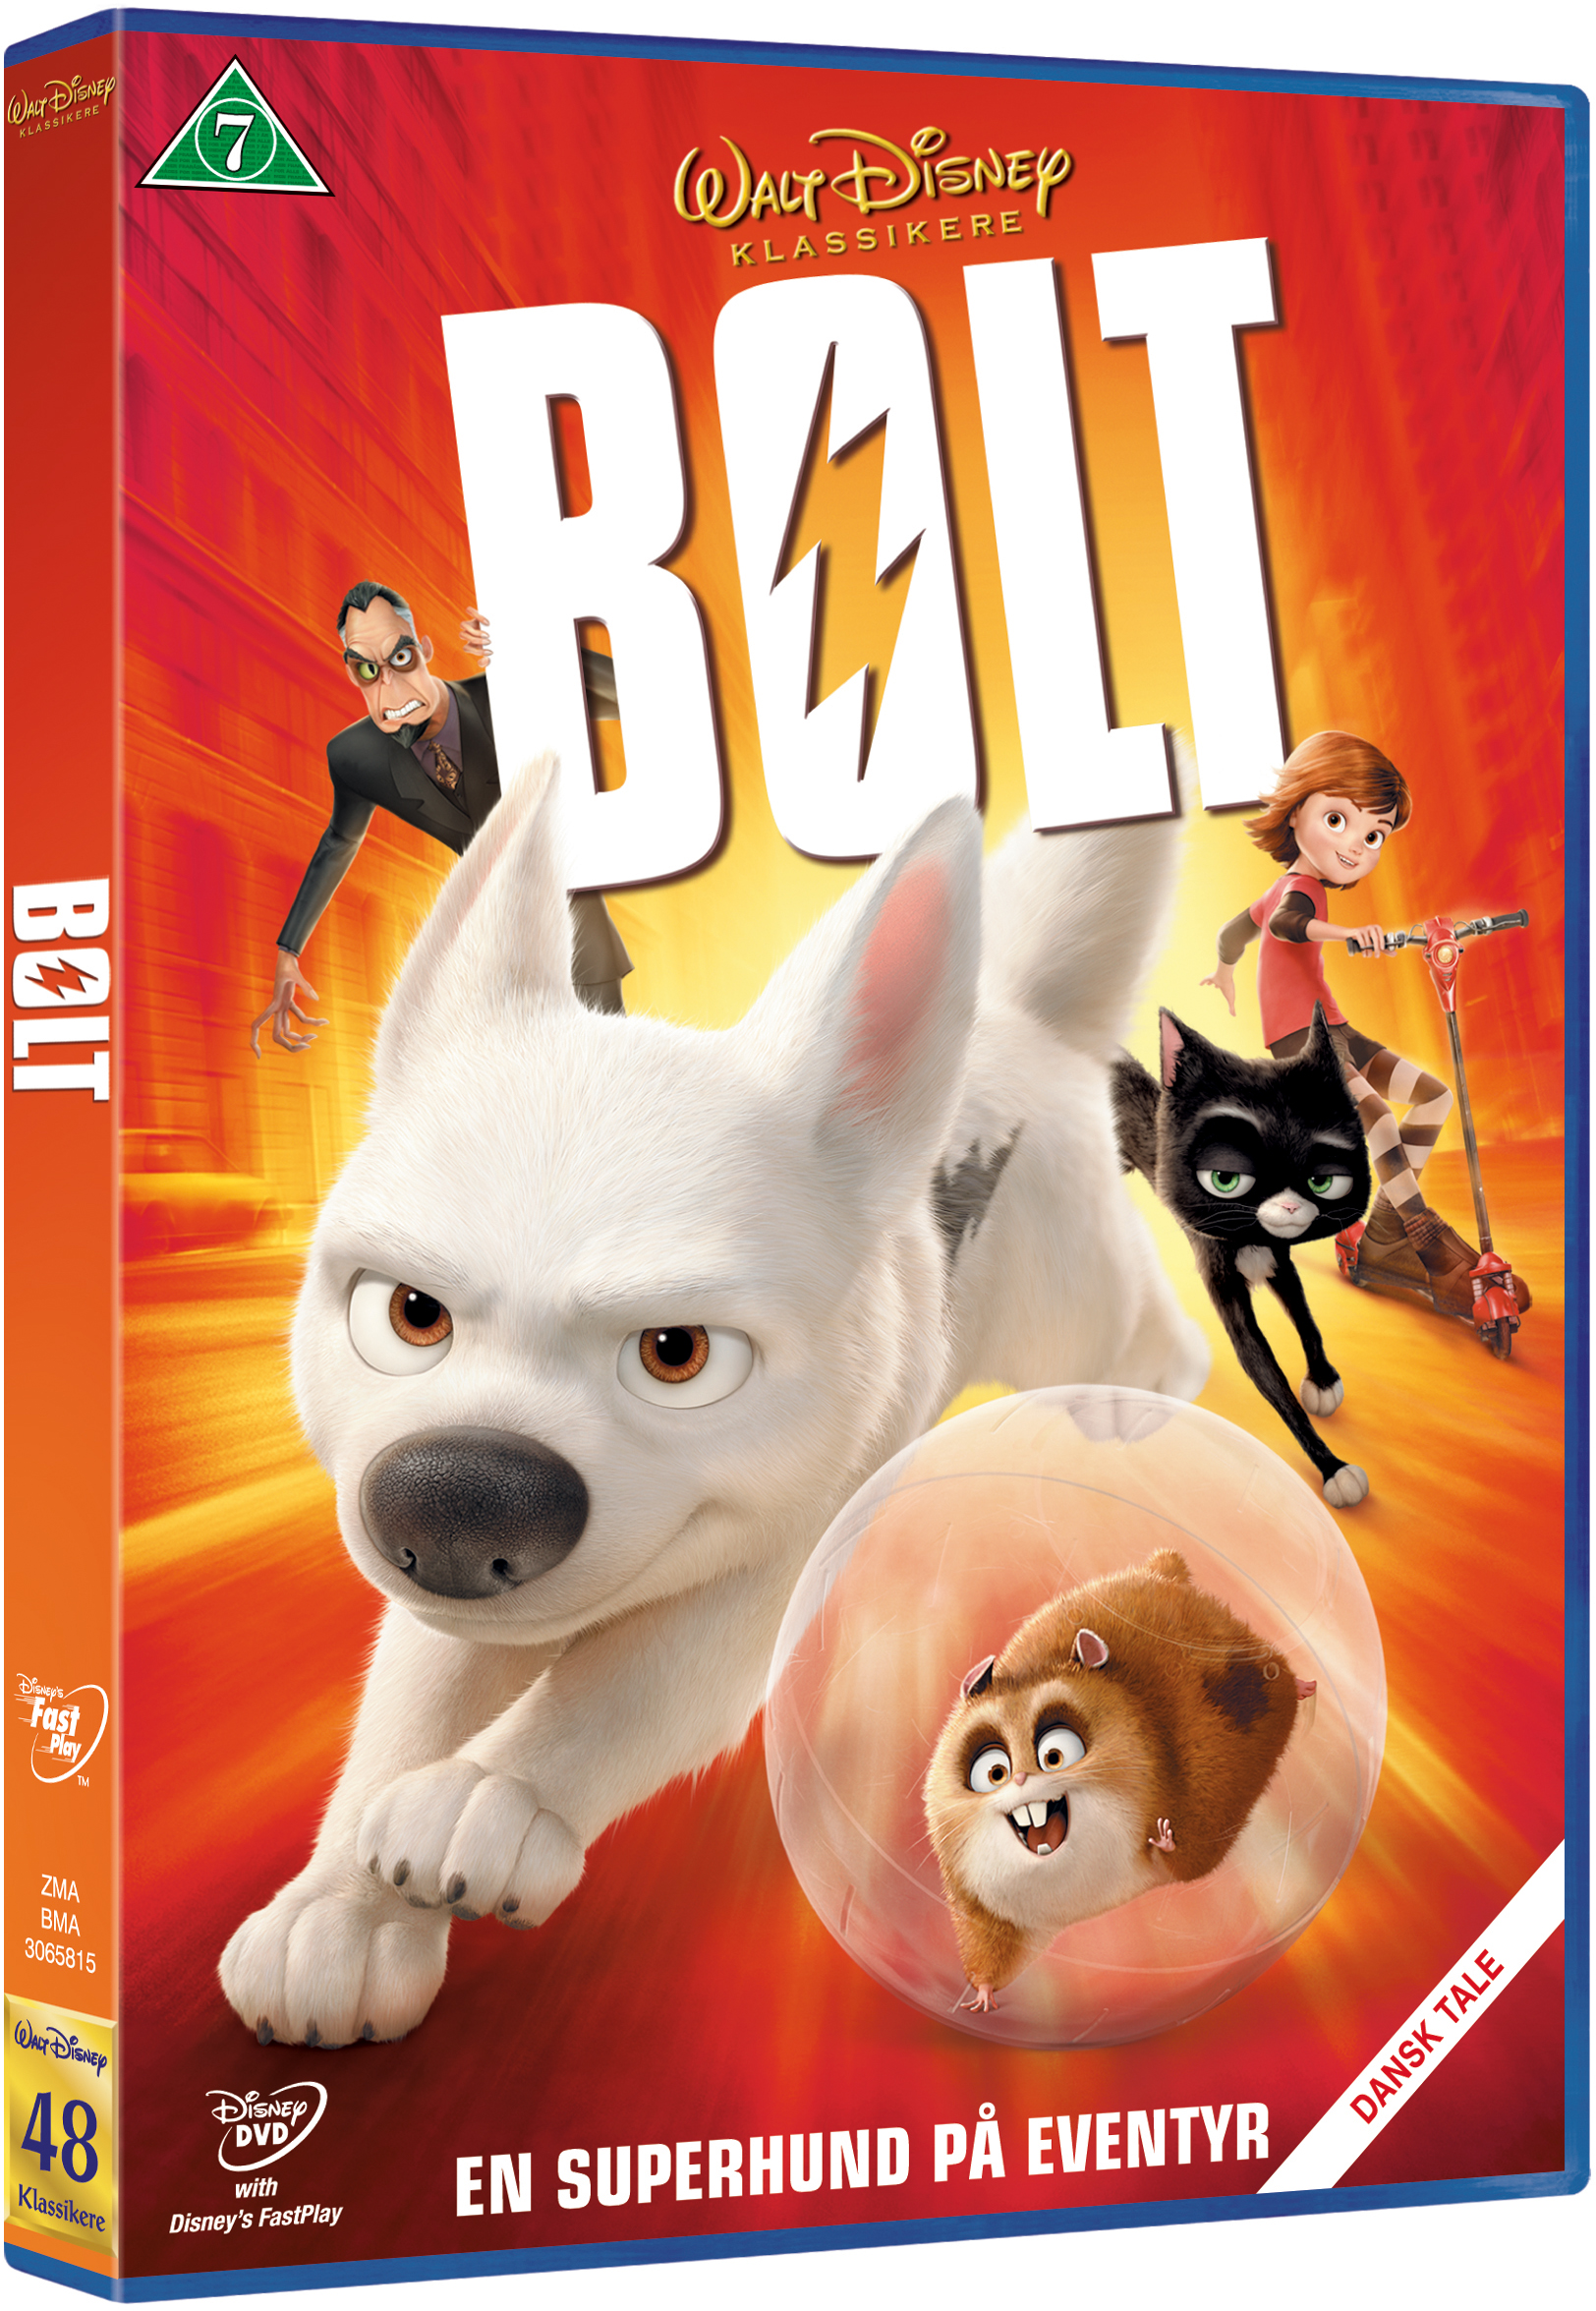 Disneys Bolt - DVD